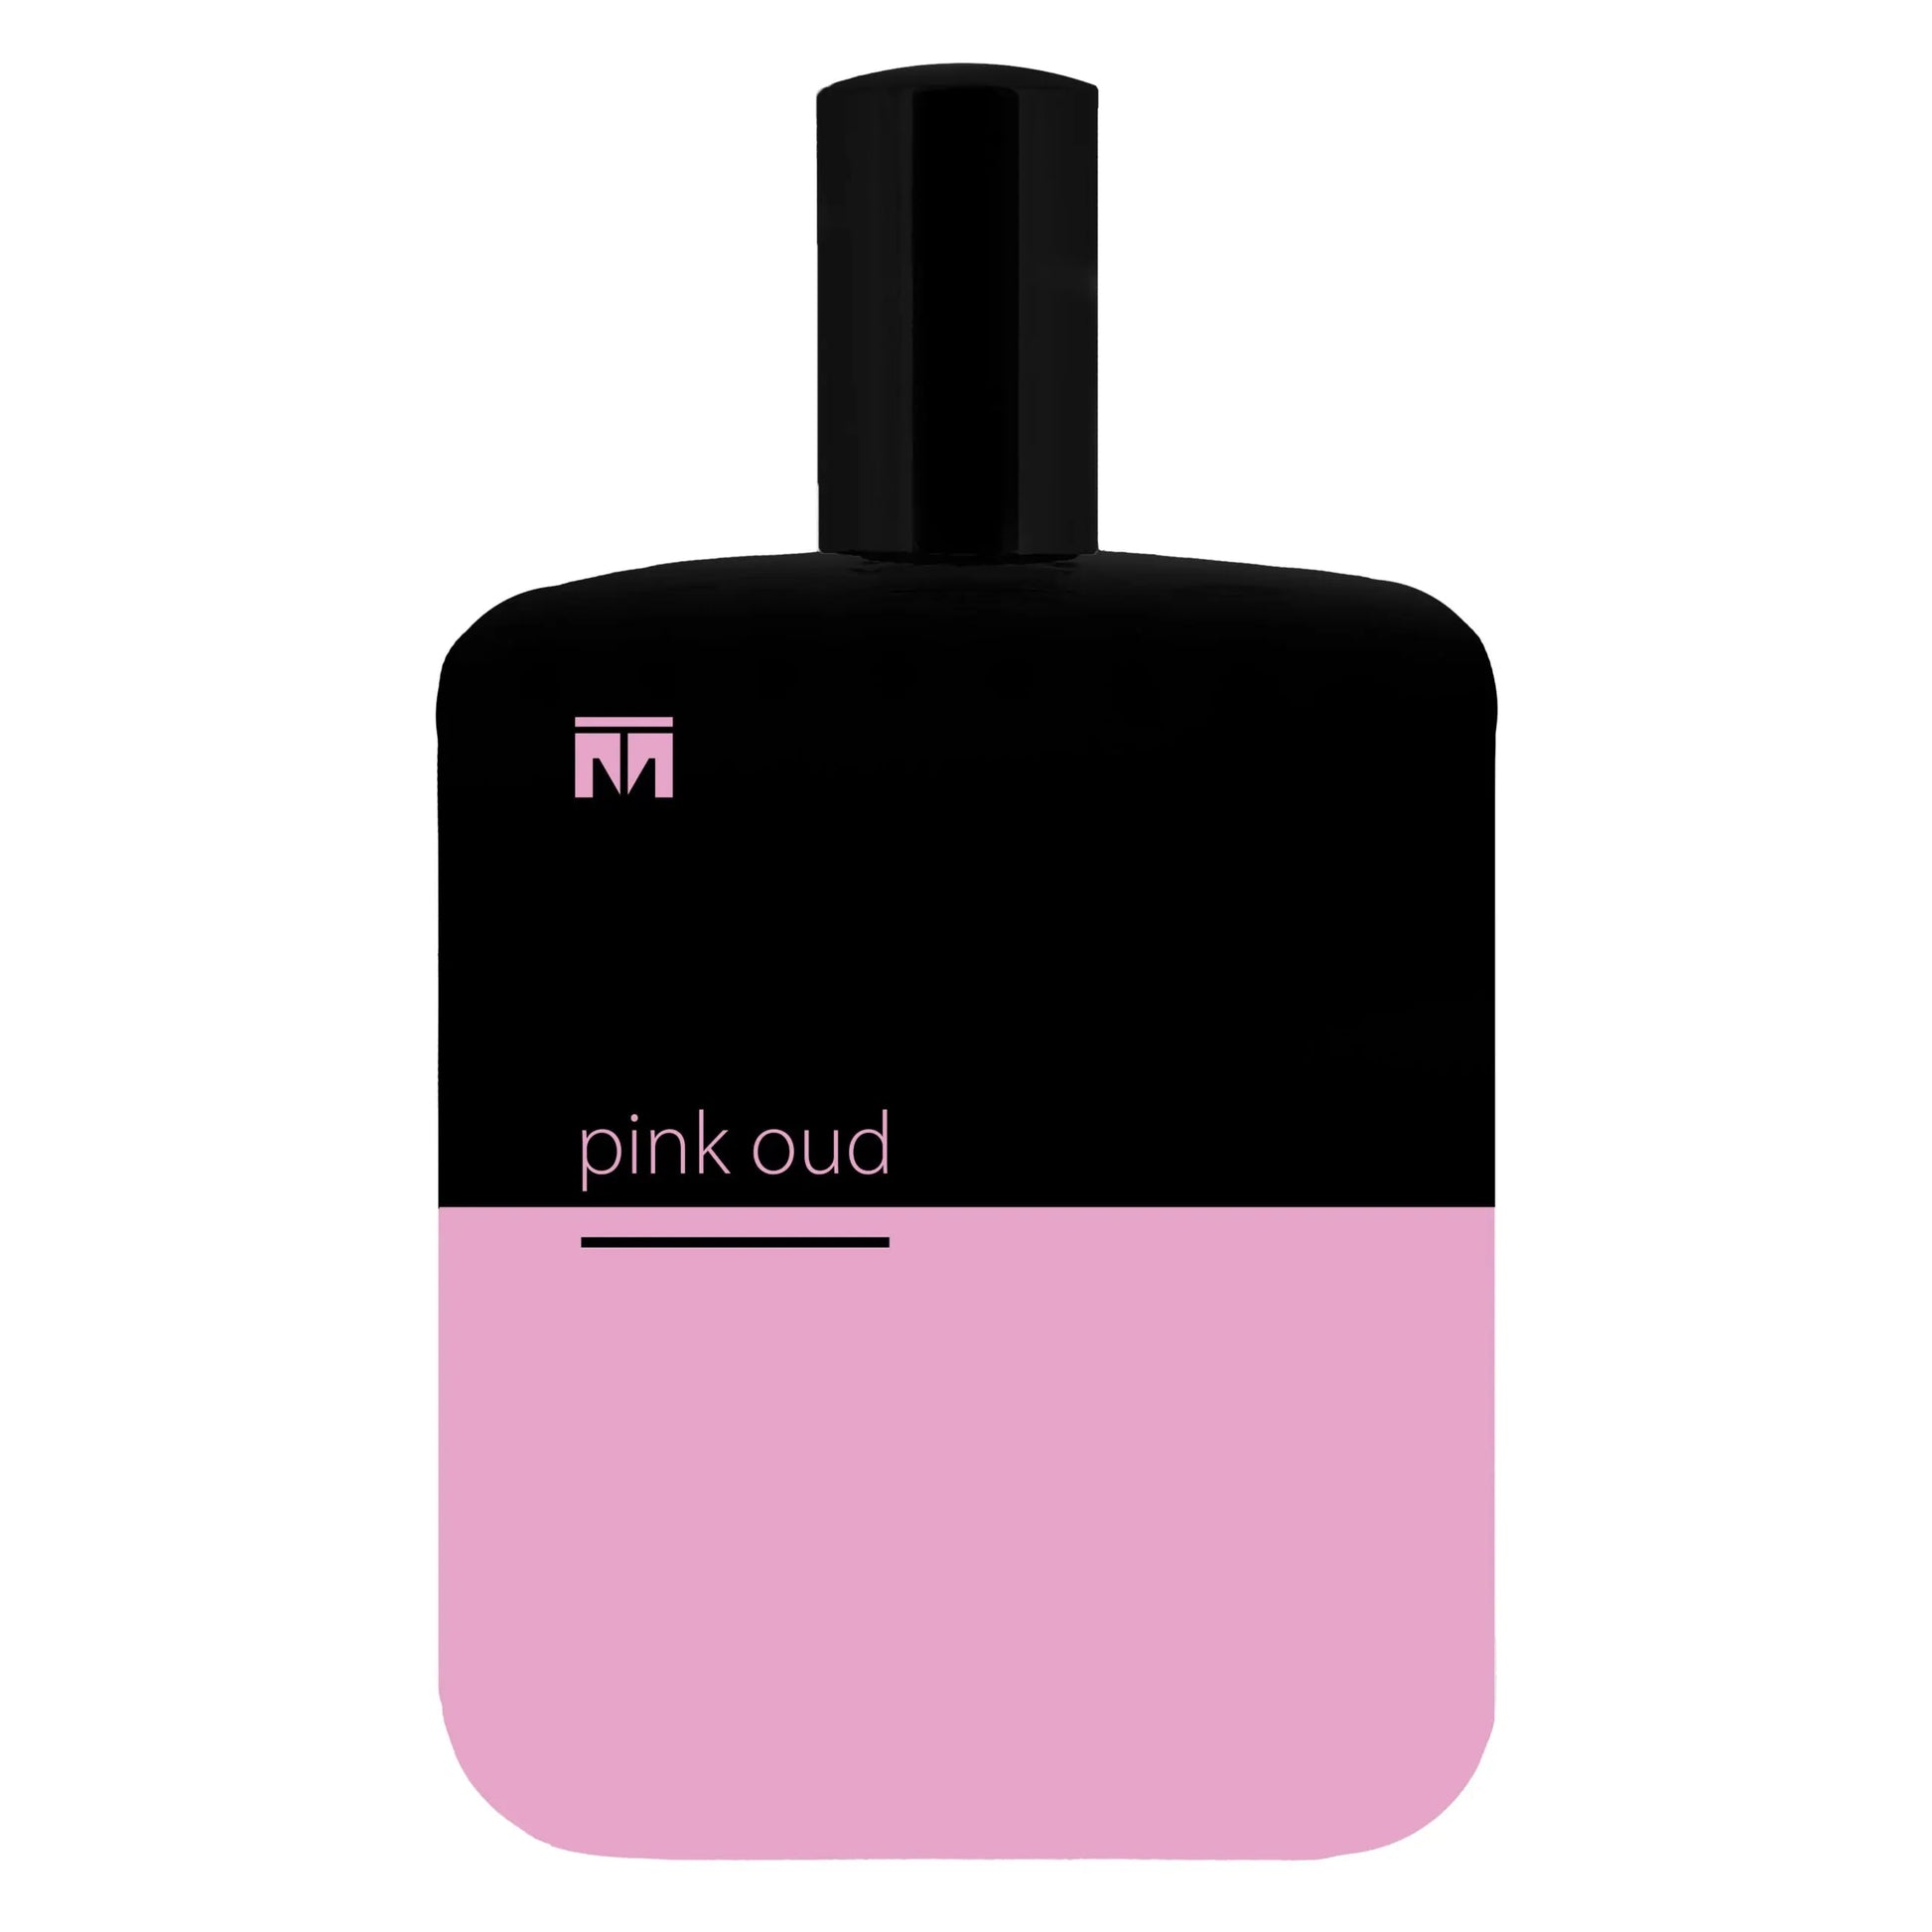 Pink Oud Classic - 60ml Eau De Parfum Toybah